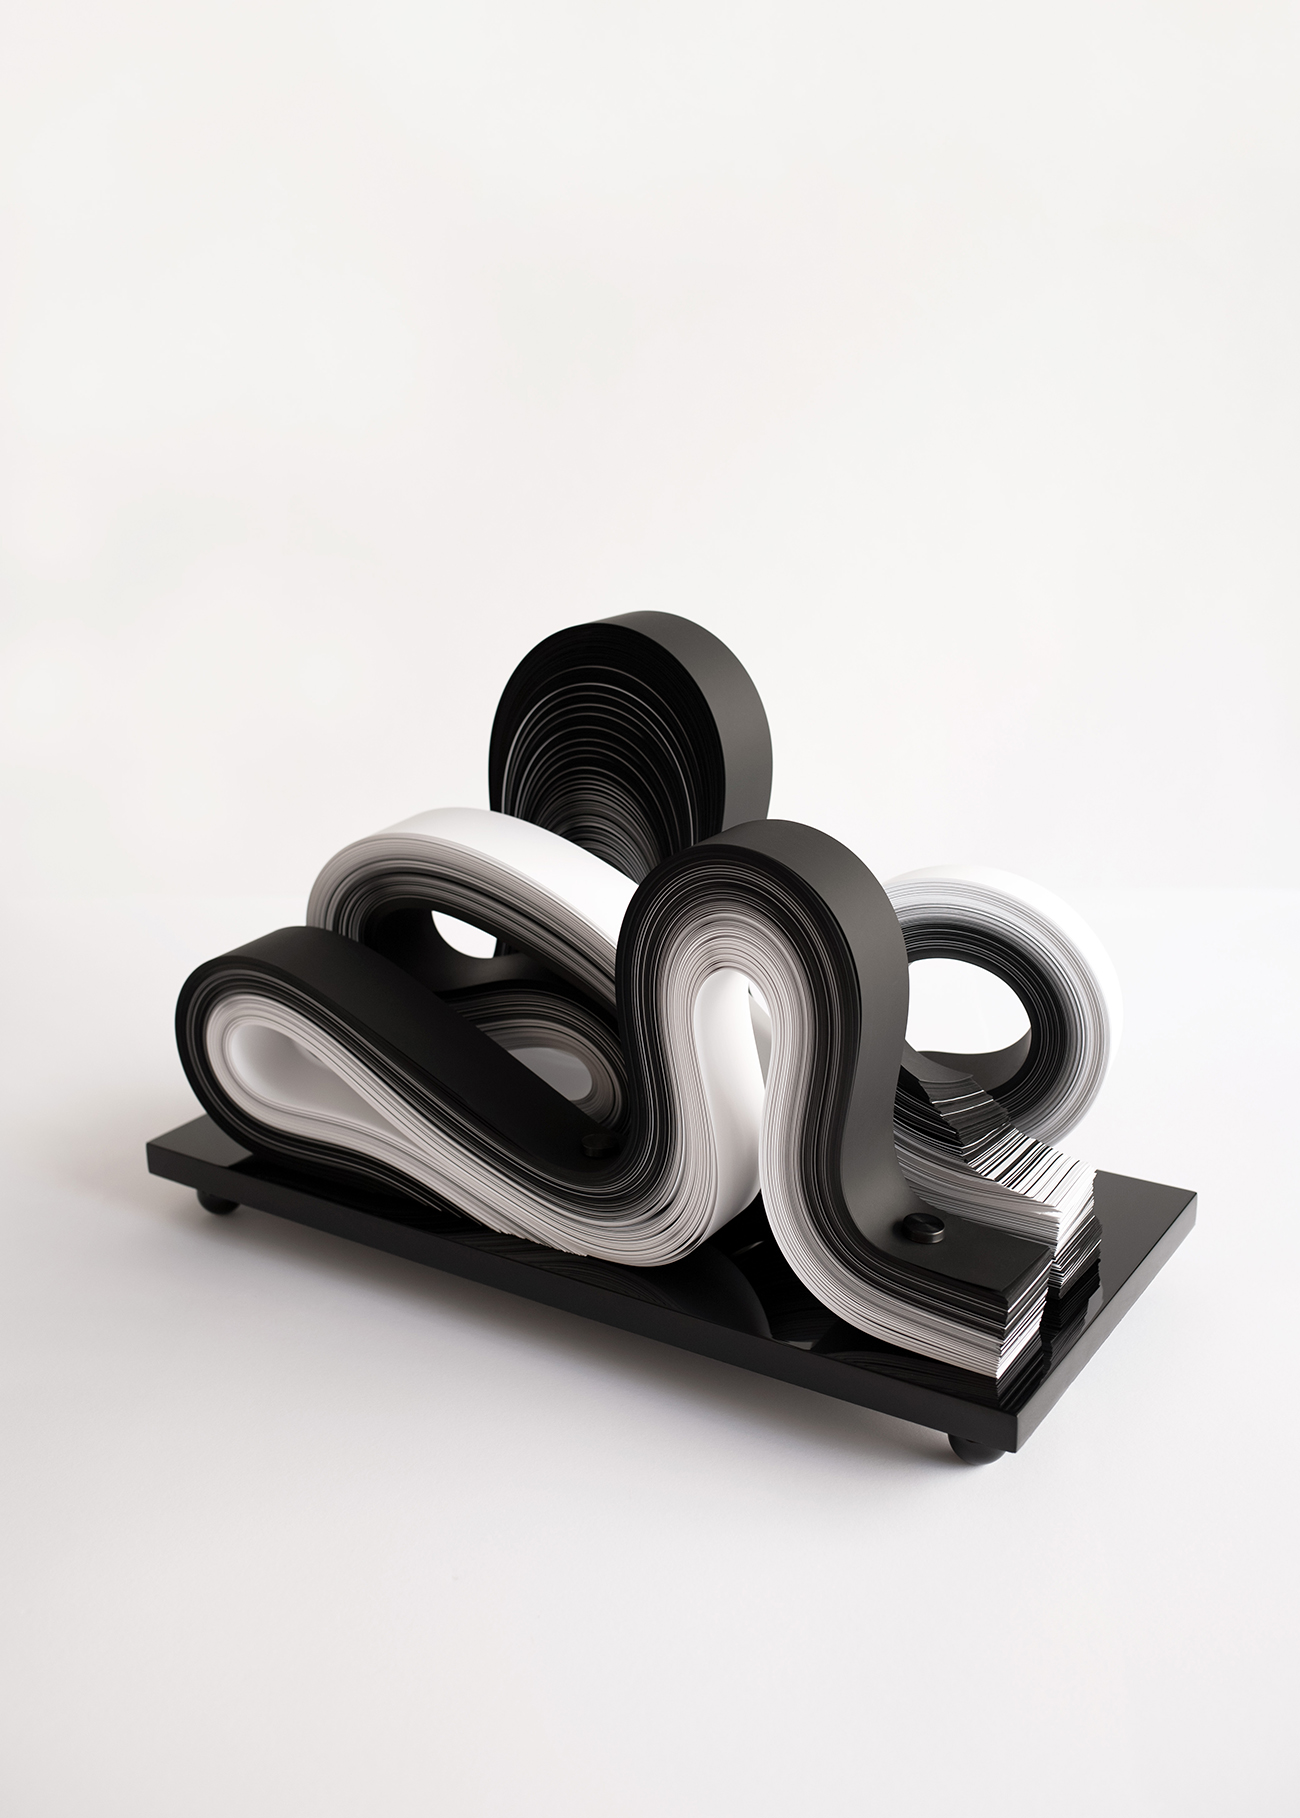 Carita studio design Maud Vantours Sculptures paper art Paris